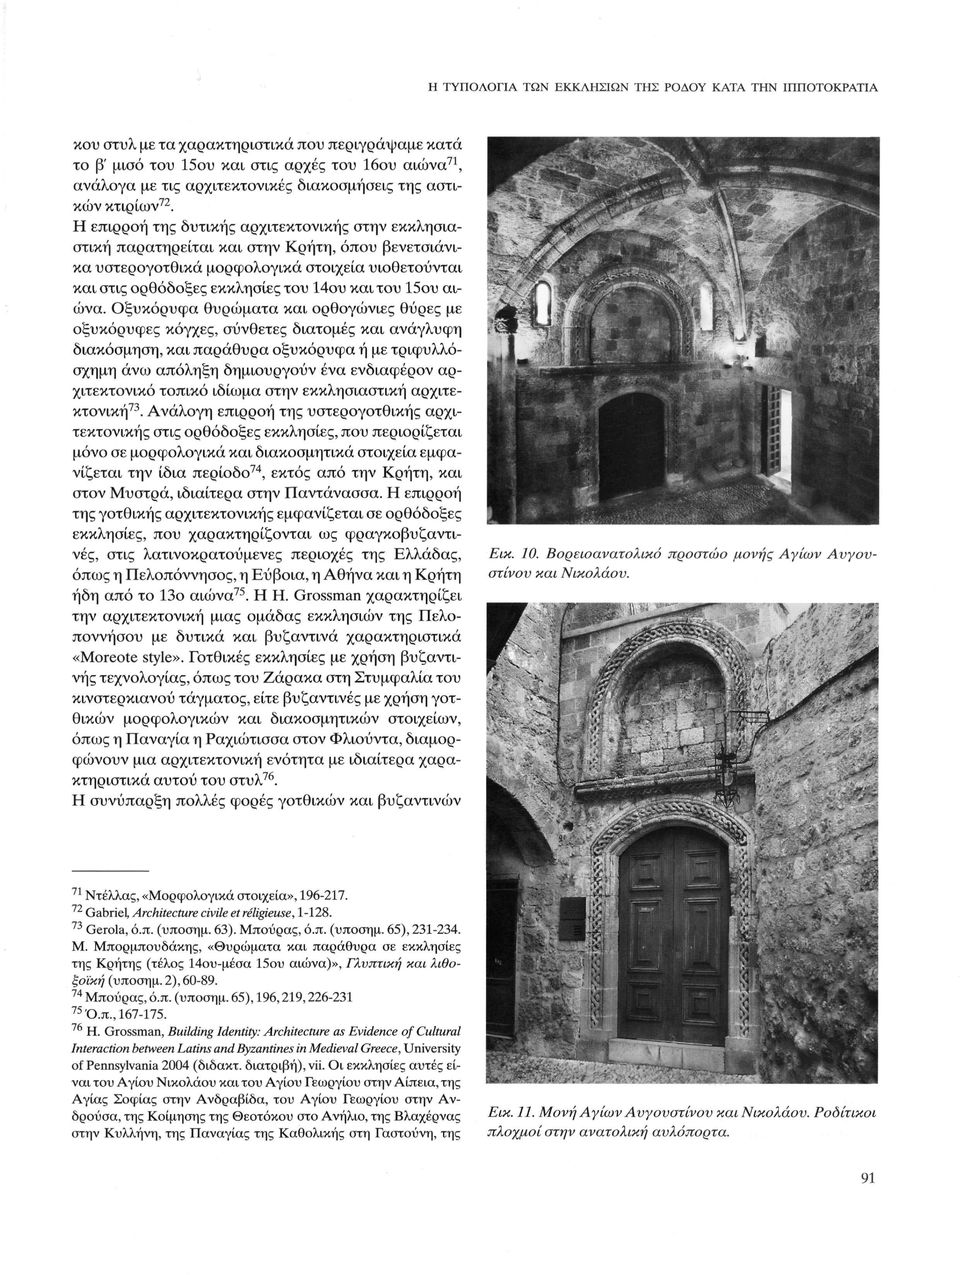 Η επιρροή της δυτικής αρχιτεκτονικής στην εκκλησιαστική παρατηρείται και στην Κρήτη, όπου βενετσιάνικα υστερογοτθικά μορφολογικά στοιχεία υιοθετούνται και στις ορθόδοξες εκκλησίες του 14ου και του